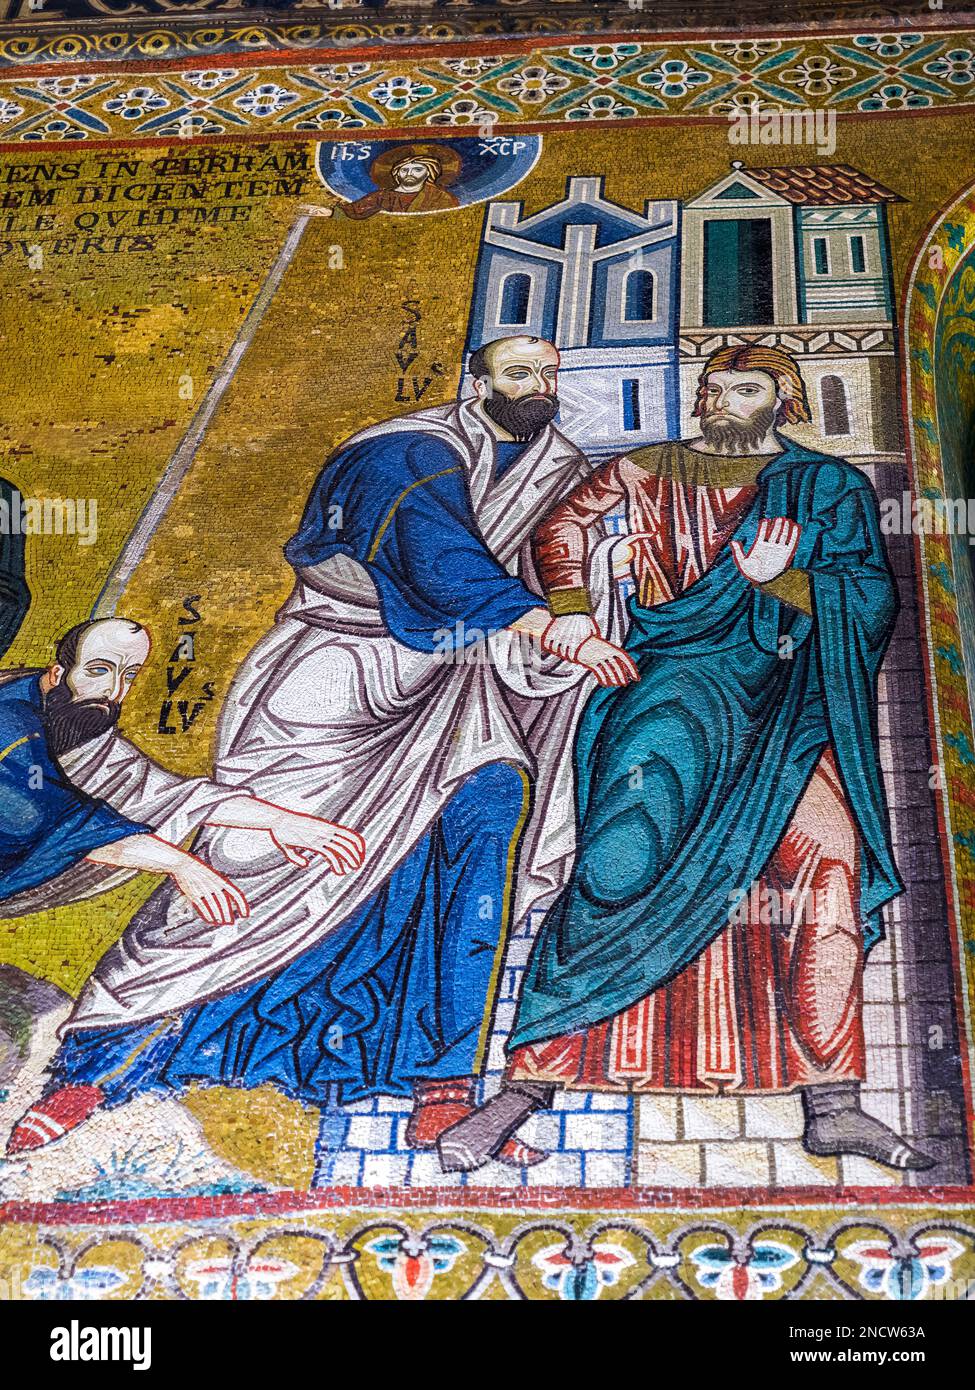 Byzantinisches Mosaik in der Palatinkapelle des normannischen Palastes in Palermo - Sizilien, Italien Stockfoto